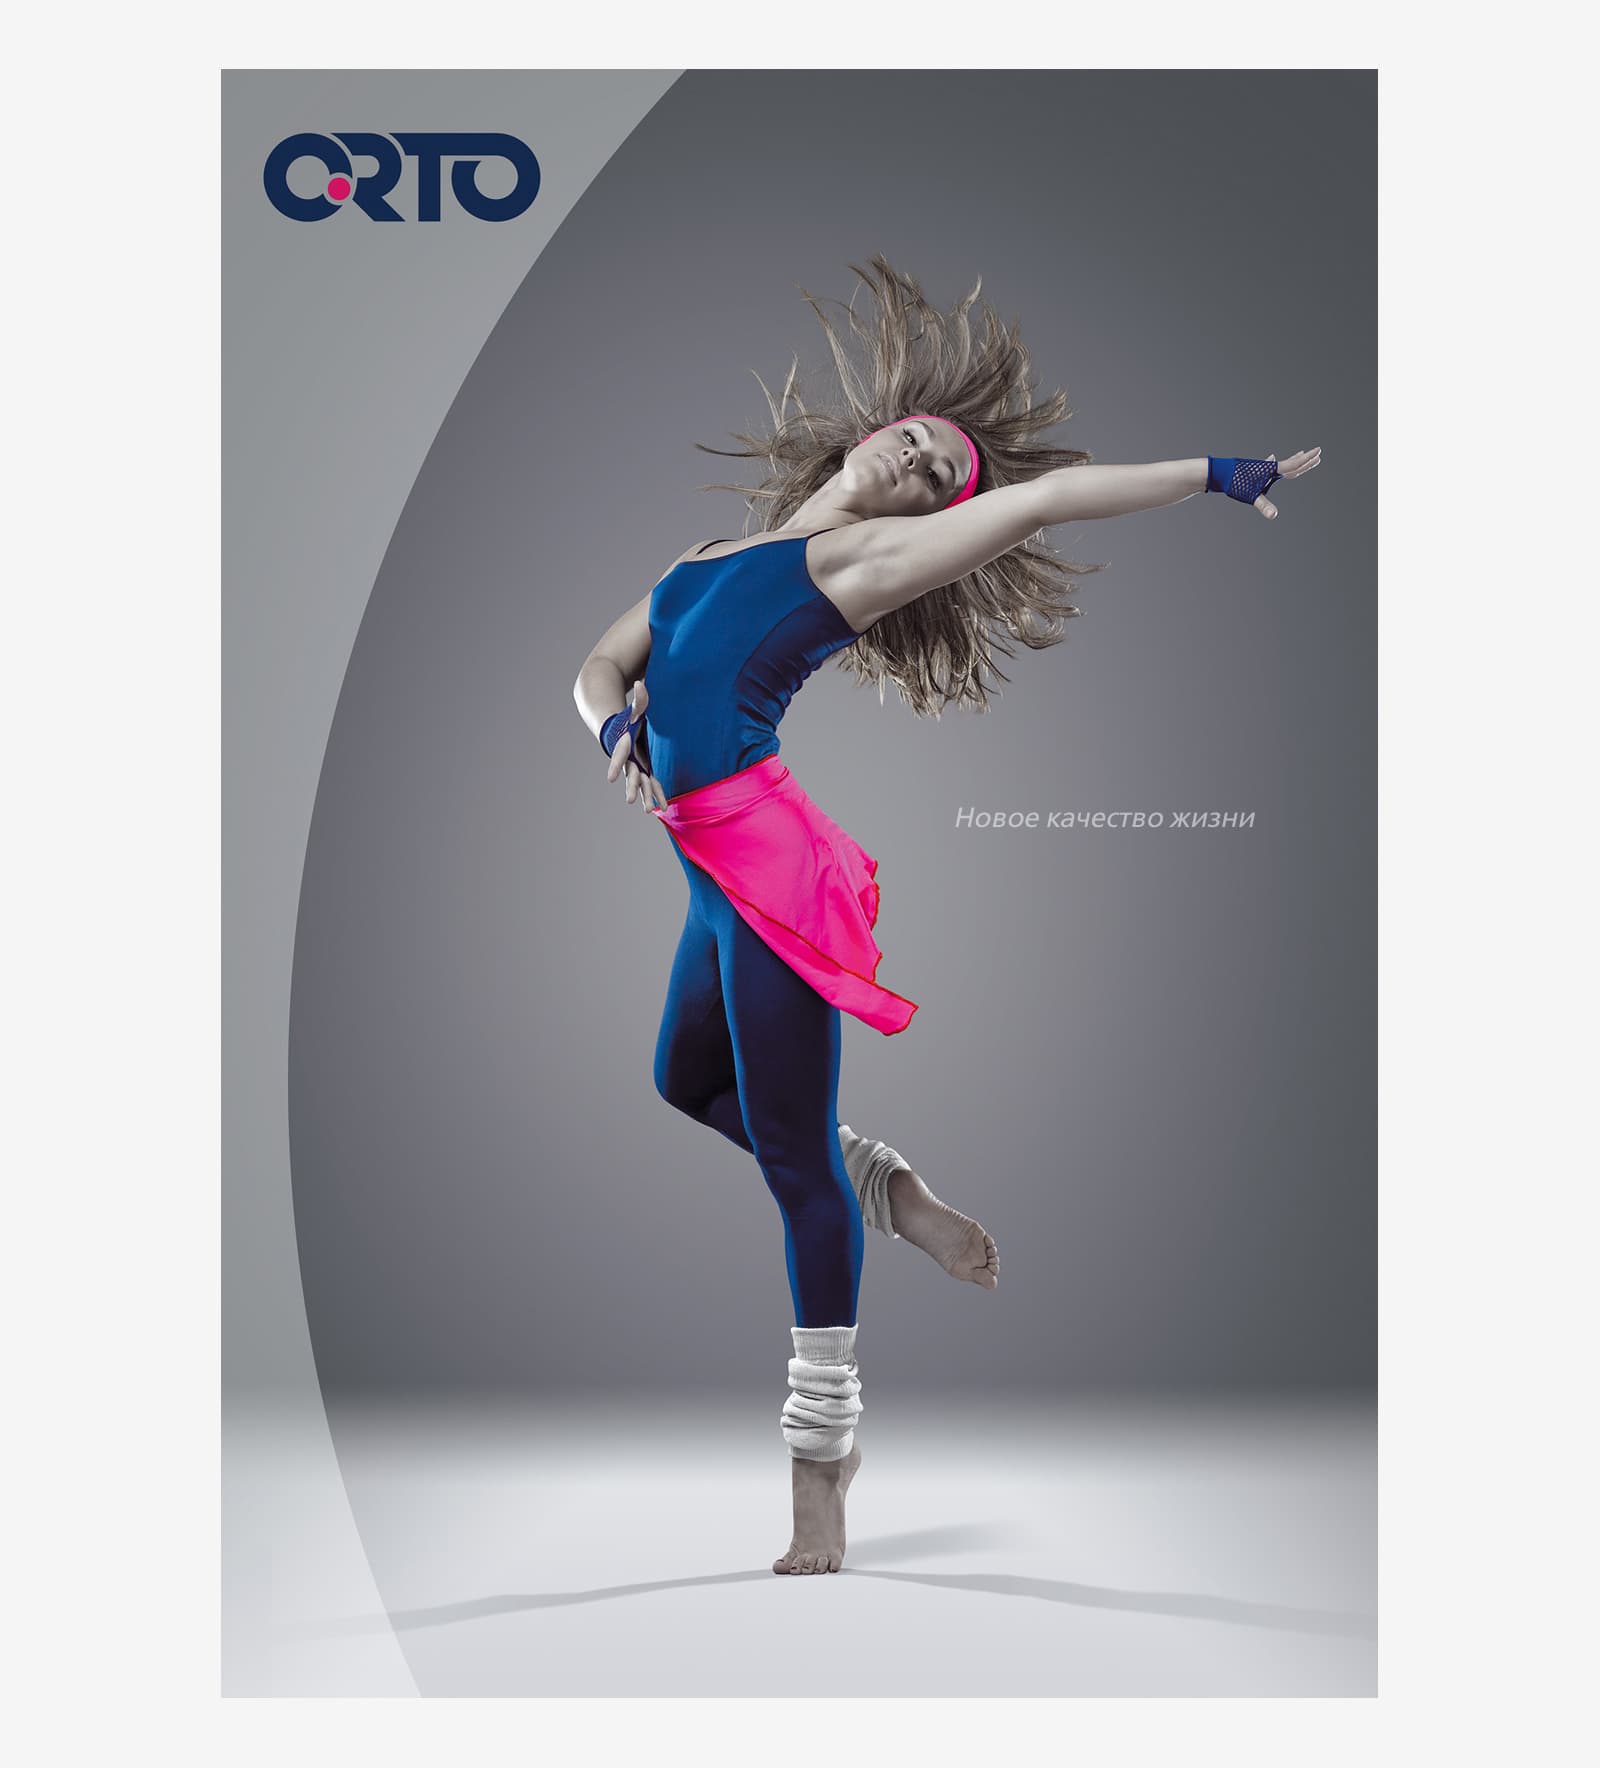 Разработали креативную концепцию для серии плакатов бренда ORTO Classic